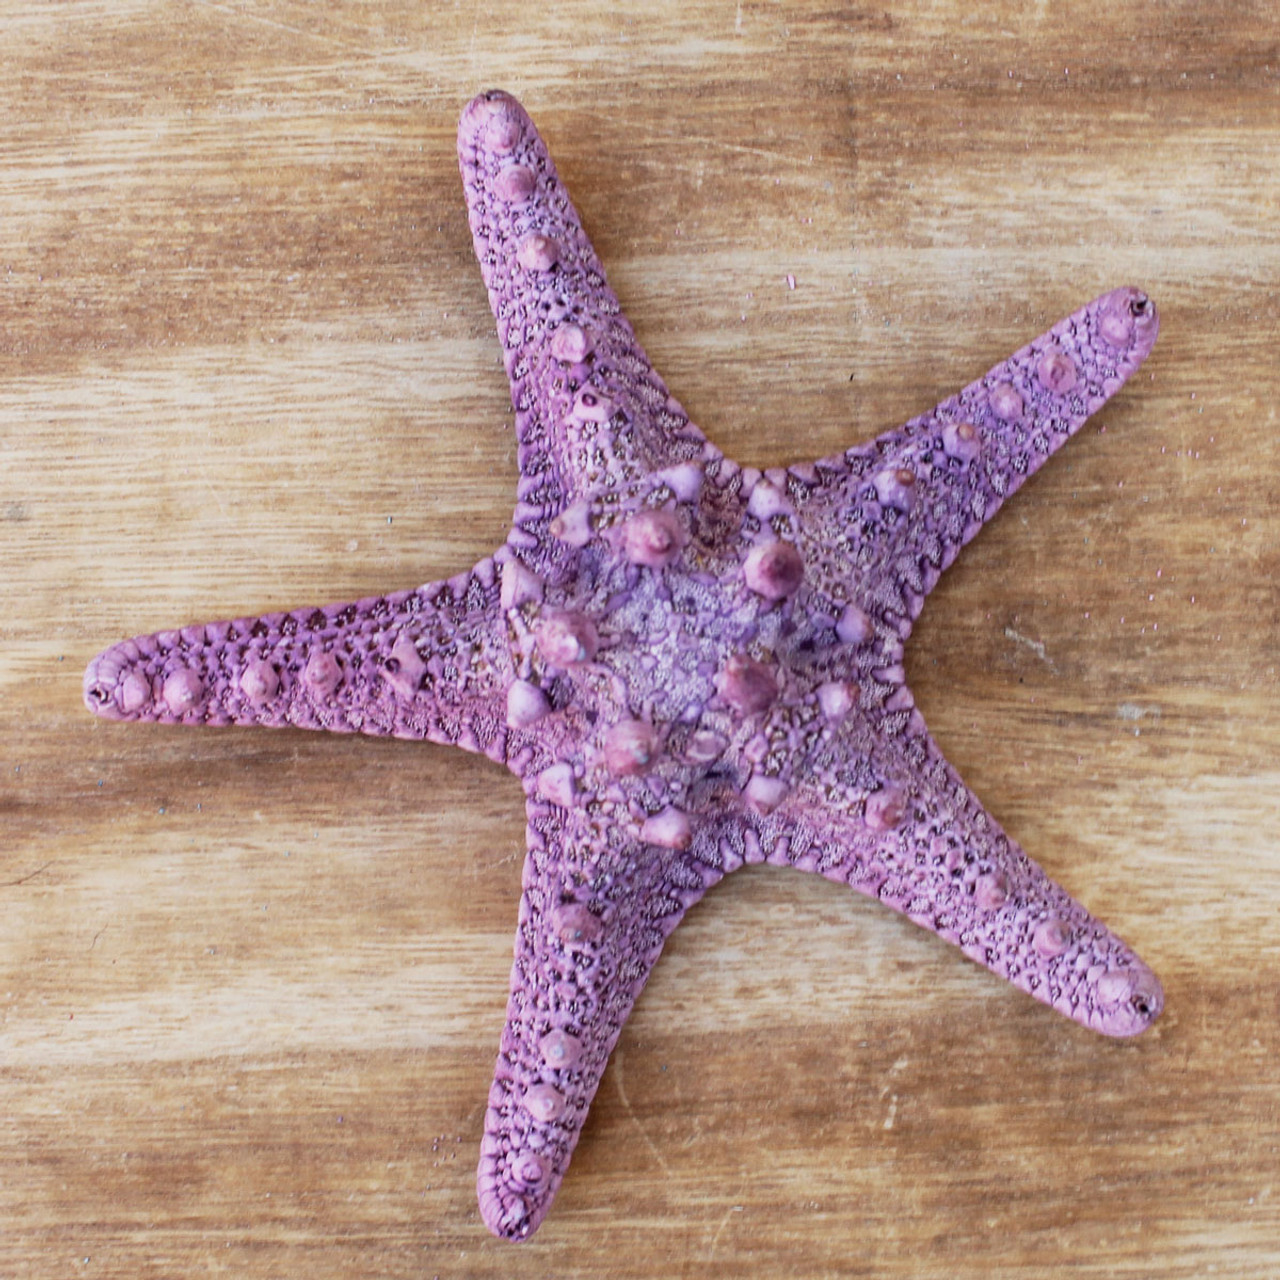 White Thorny Starfish - Knobby Sea Stars - Bumpy Star - California